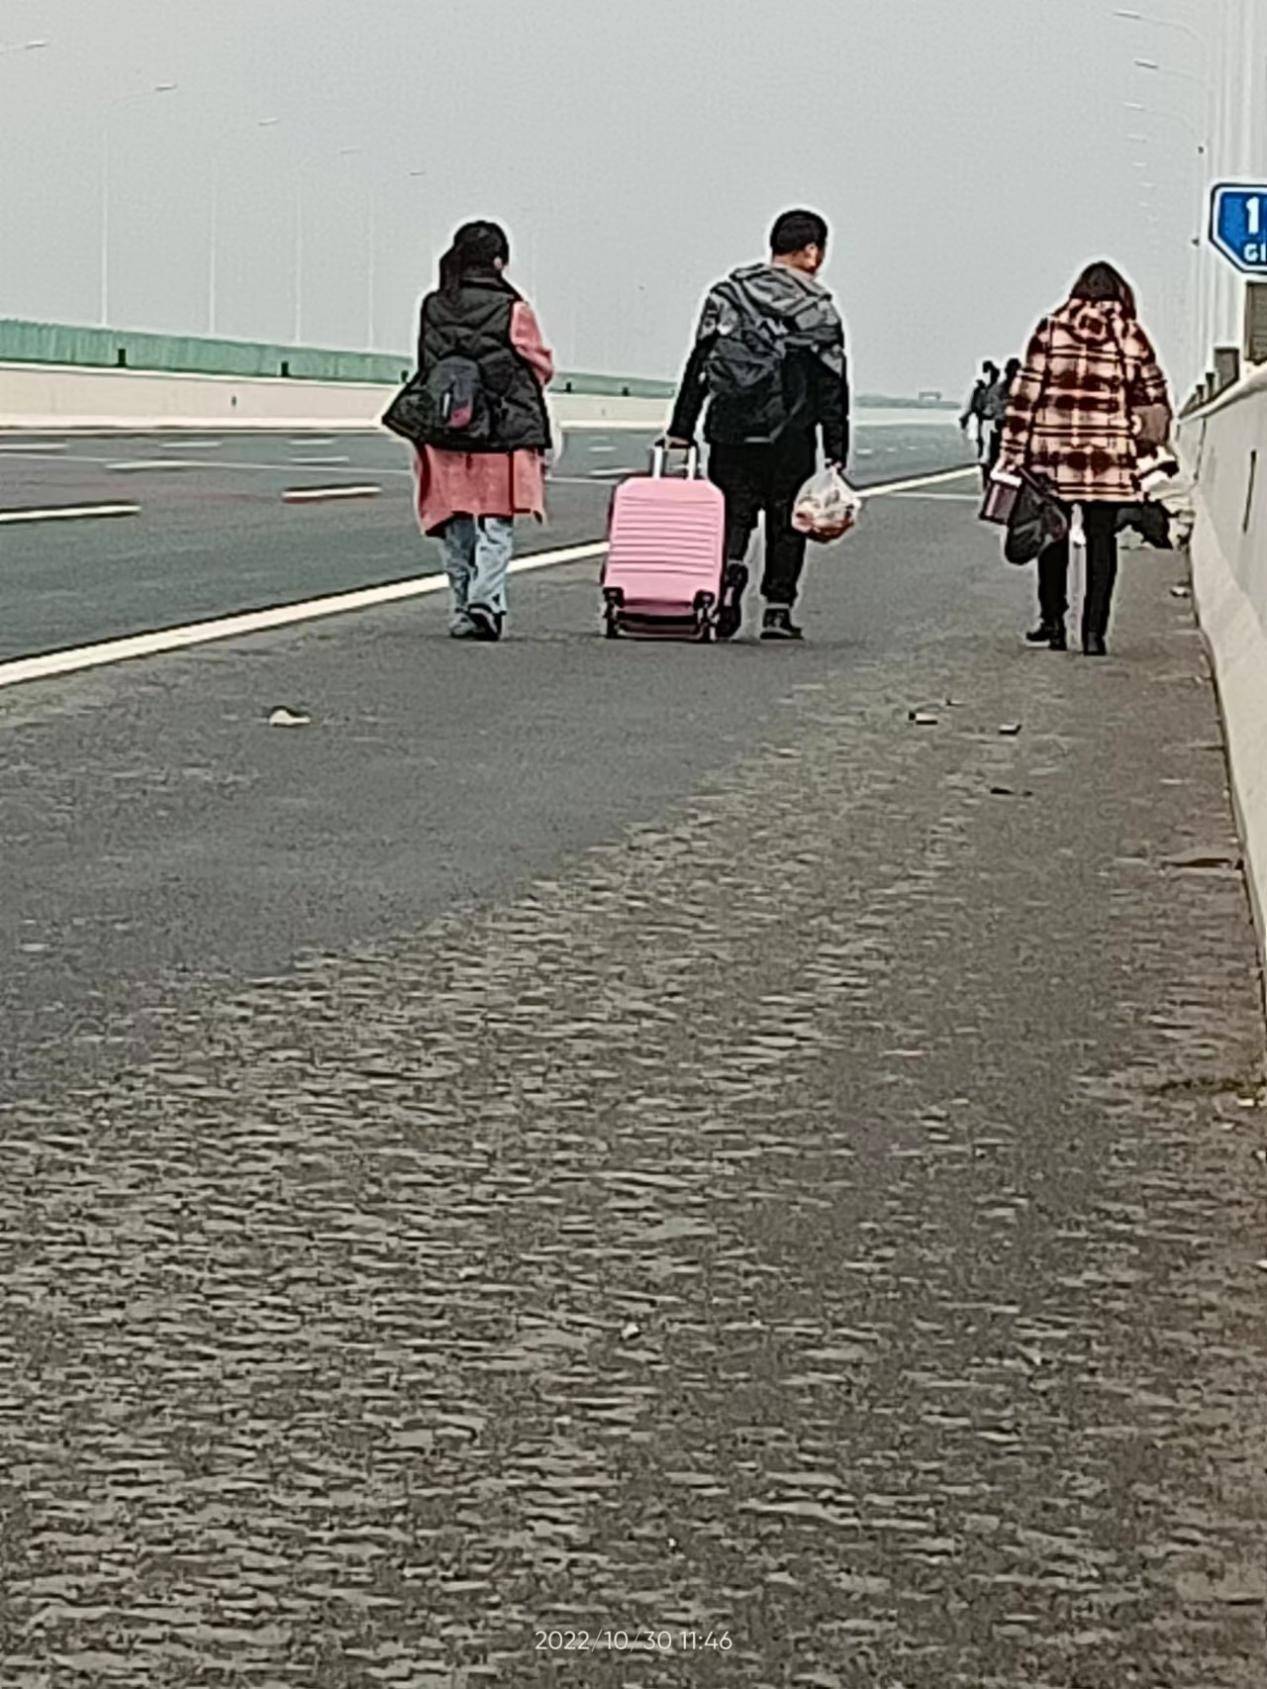 19岁女孩从富士康走16小时回家 脚磨出泡同伴没抛弃 有人送物资